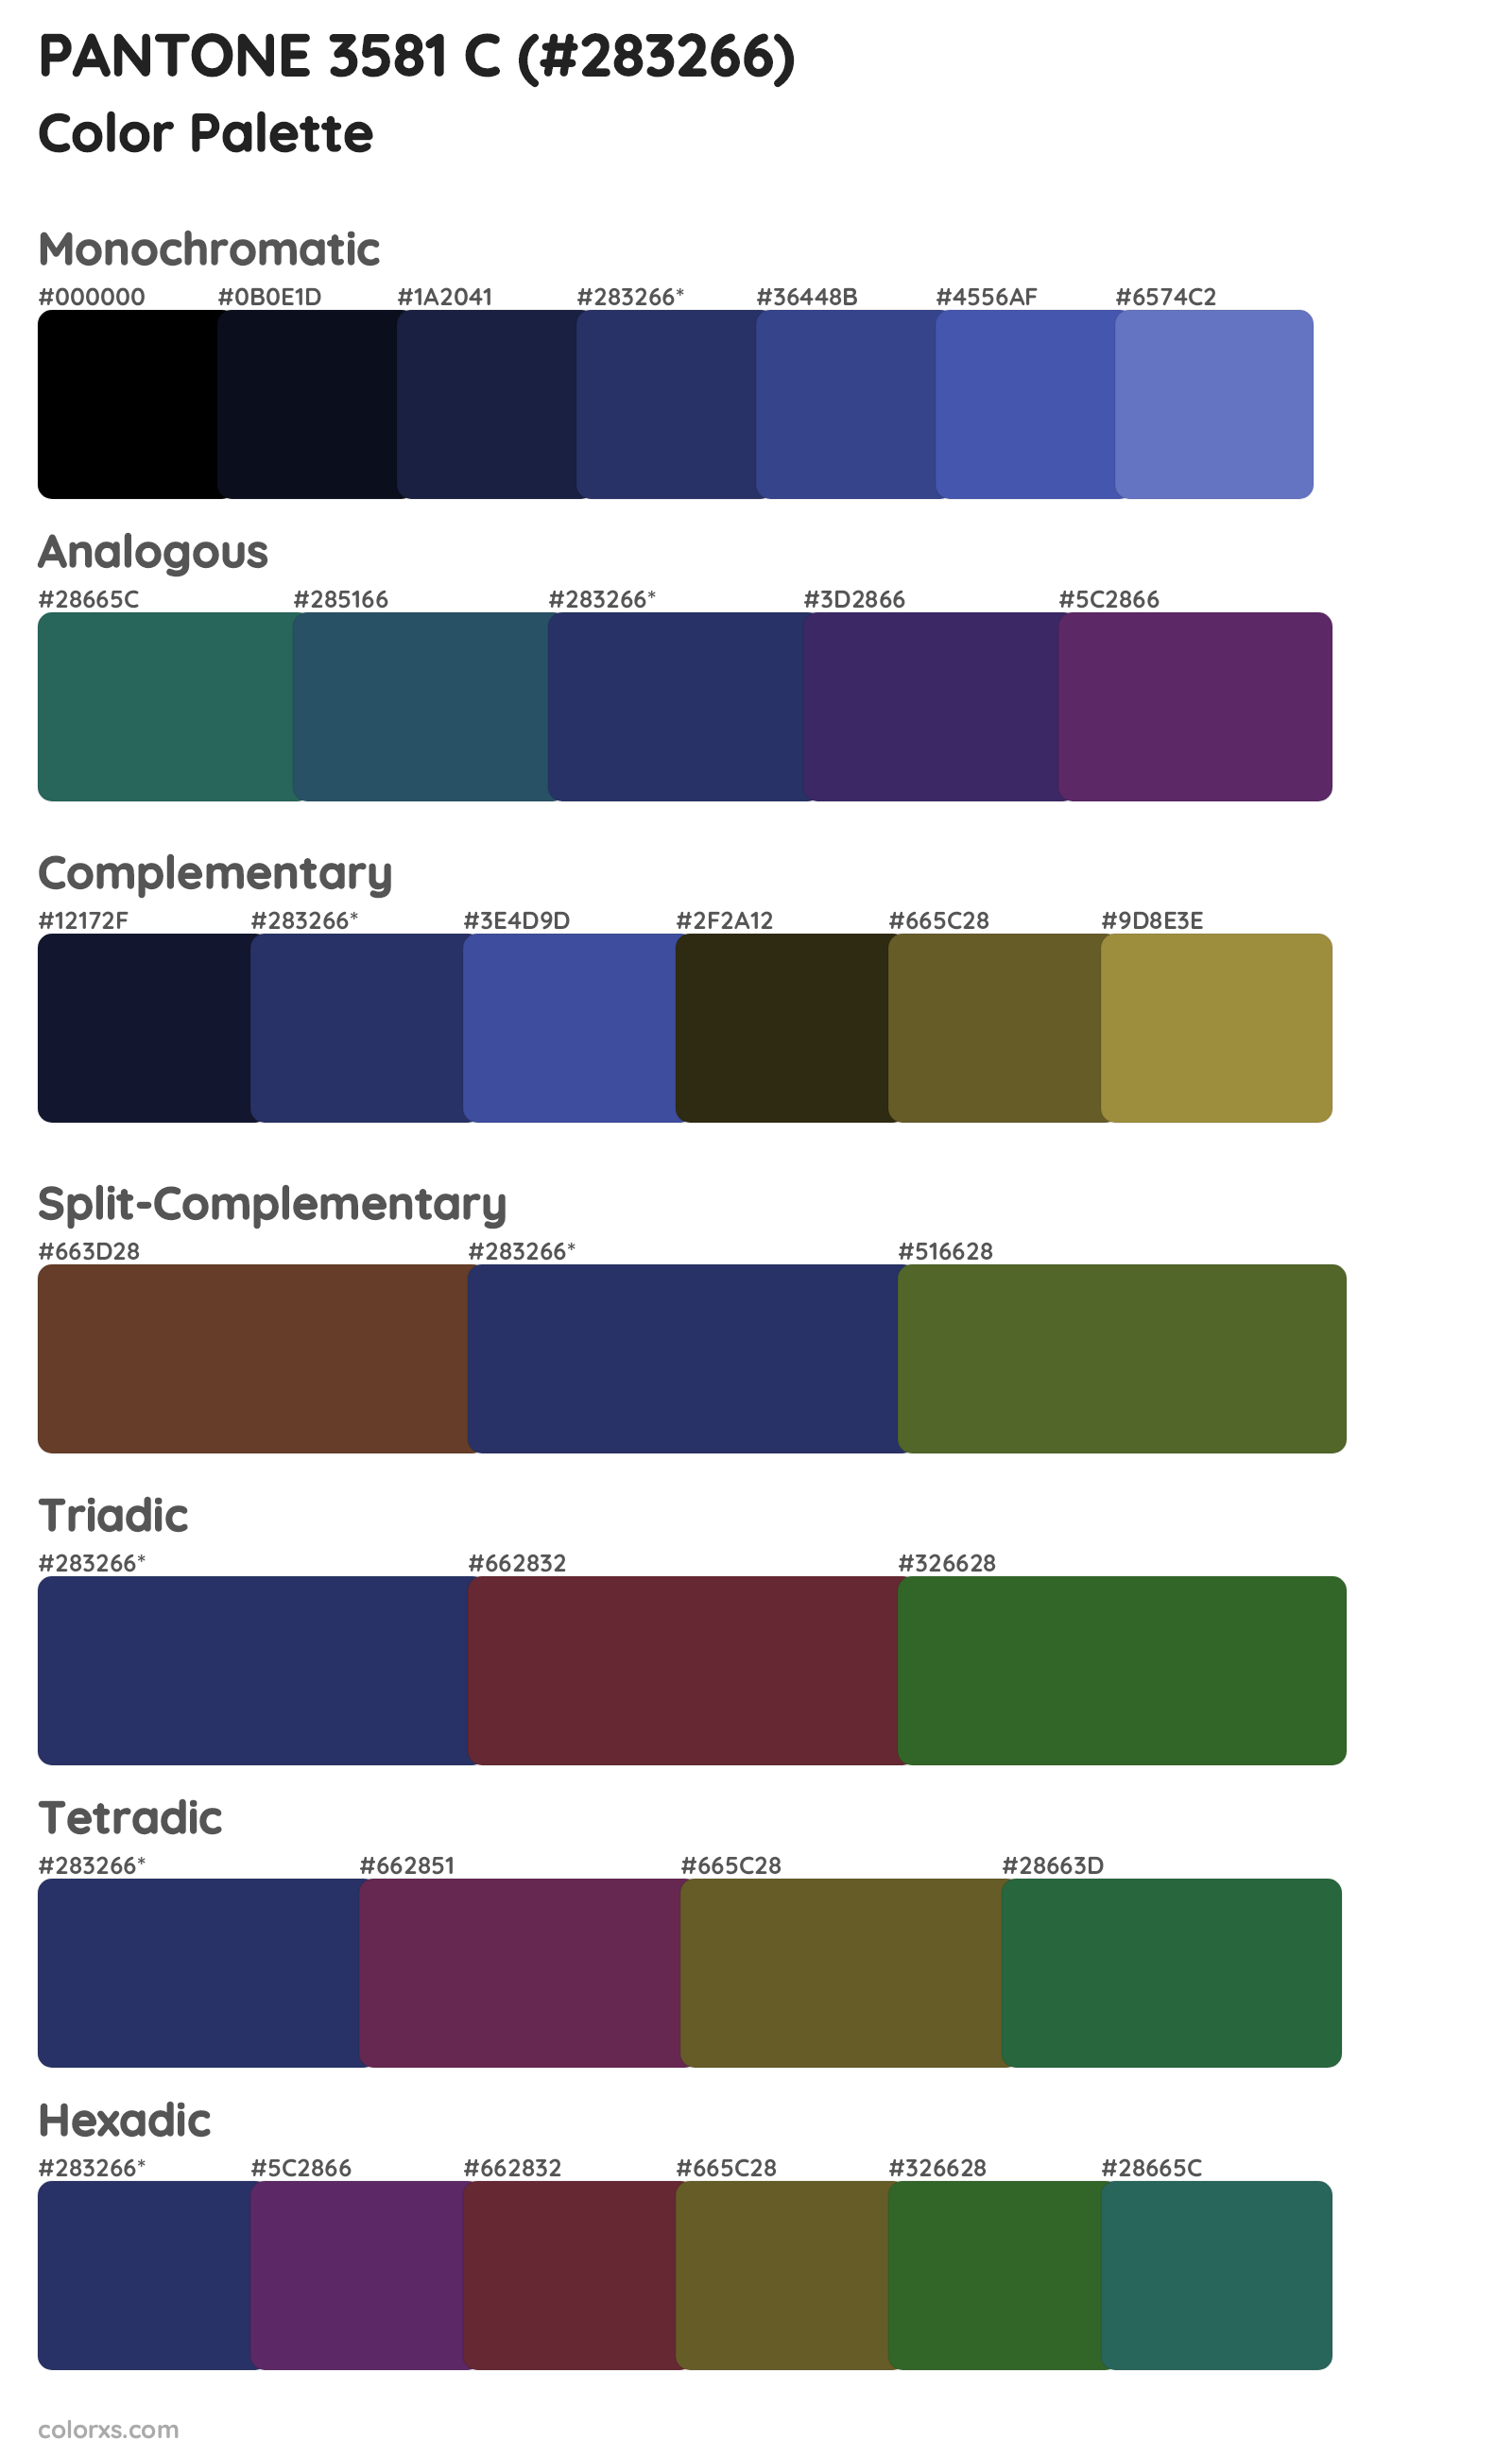 PANTONE 3581 C Color Scheme Palettes